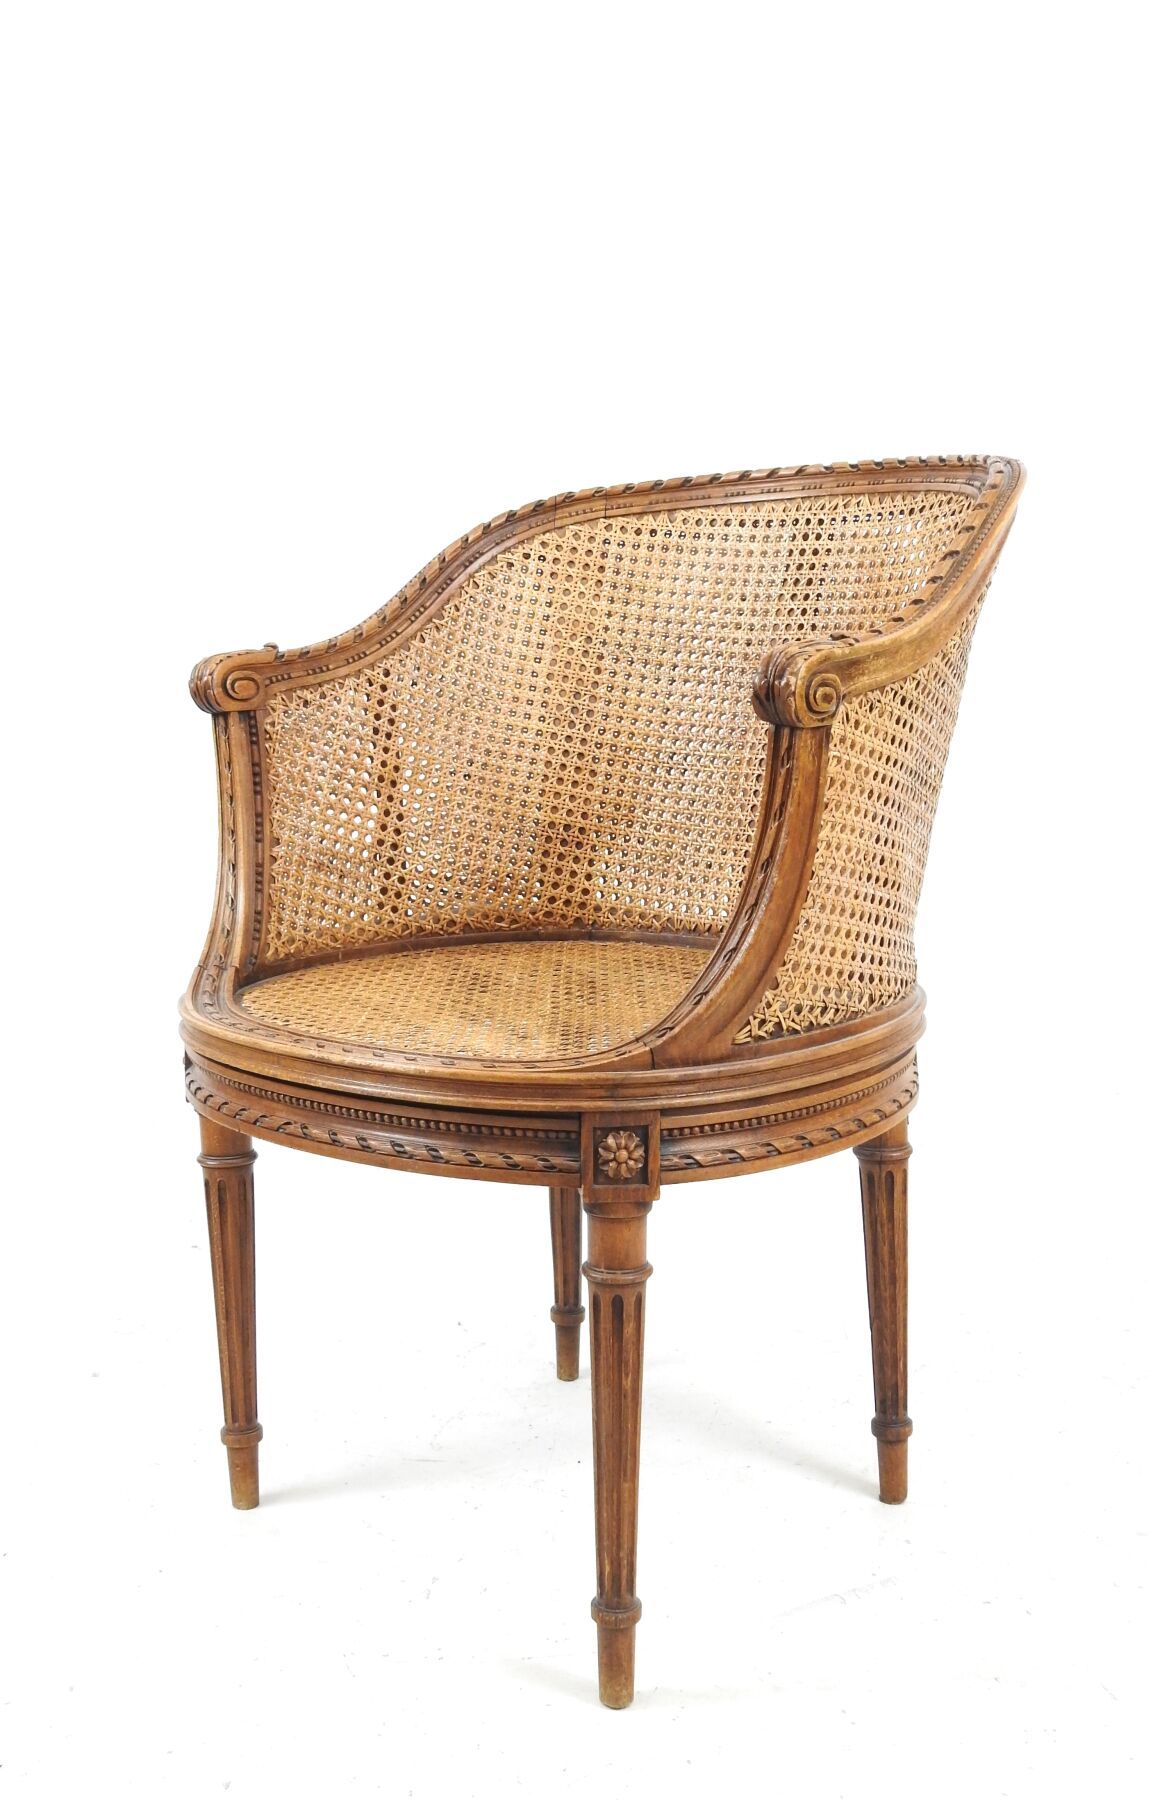 Null 胡桃木扶手椅，模制并雕刻有珍珠楣和缎带卷轴。扶手椅立于四条锥形凹槽腿上。路易十六风格。高 80 - 宽 58 - 深 58 厘米。